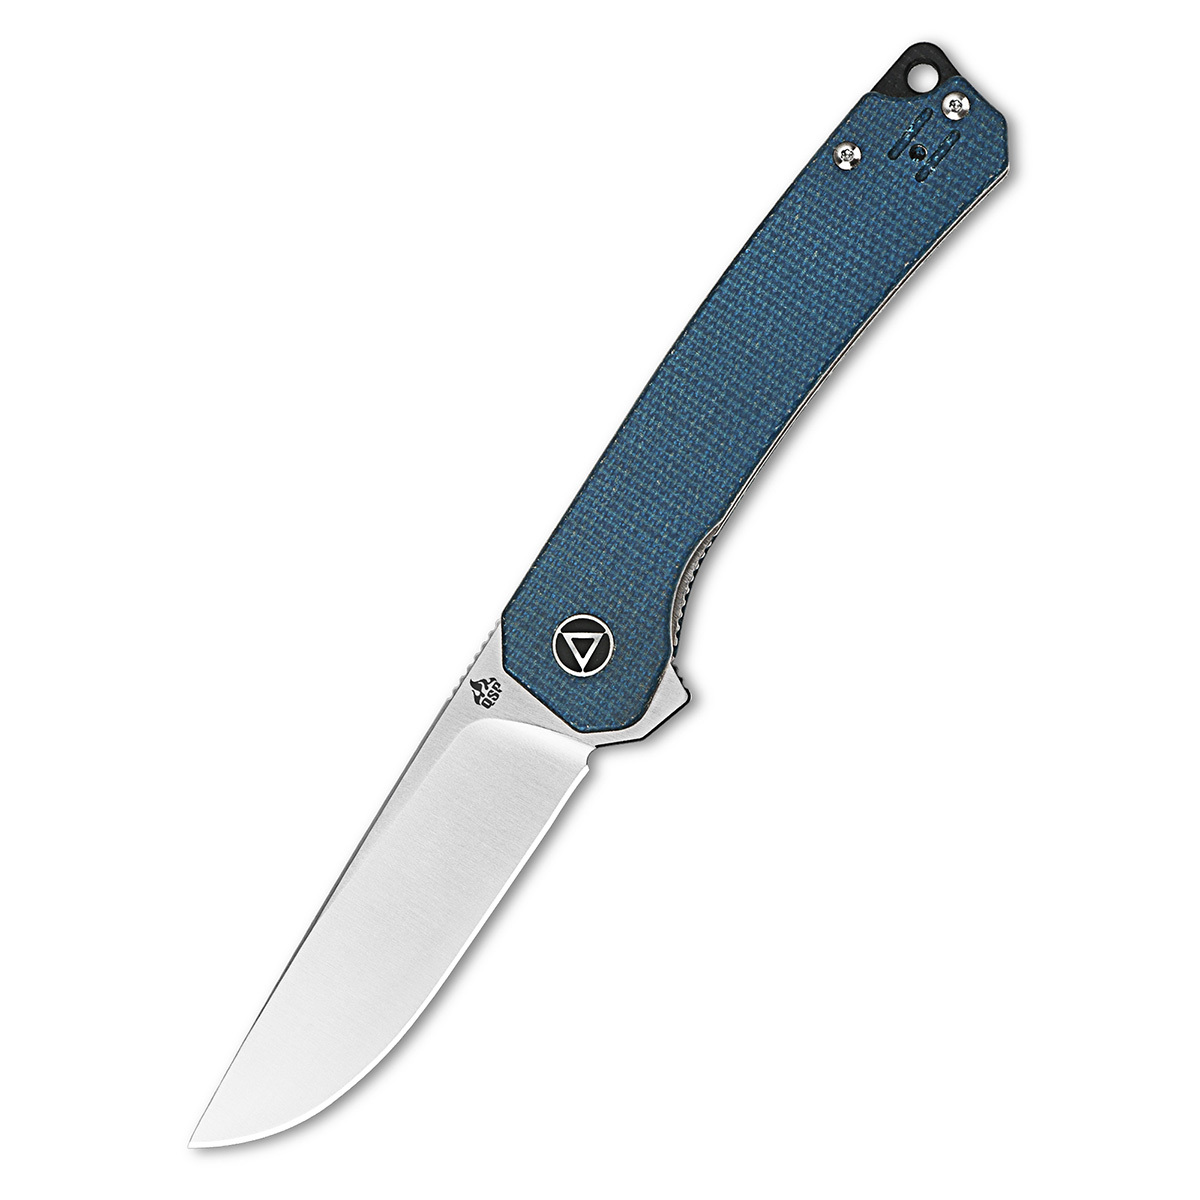 Складной нож QSP Osprey, сталь 14C28N, рукоять микарта, синий складной нож bestech knives ascot d2 черно синий карбон